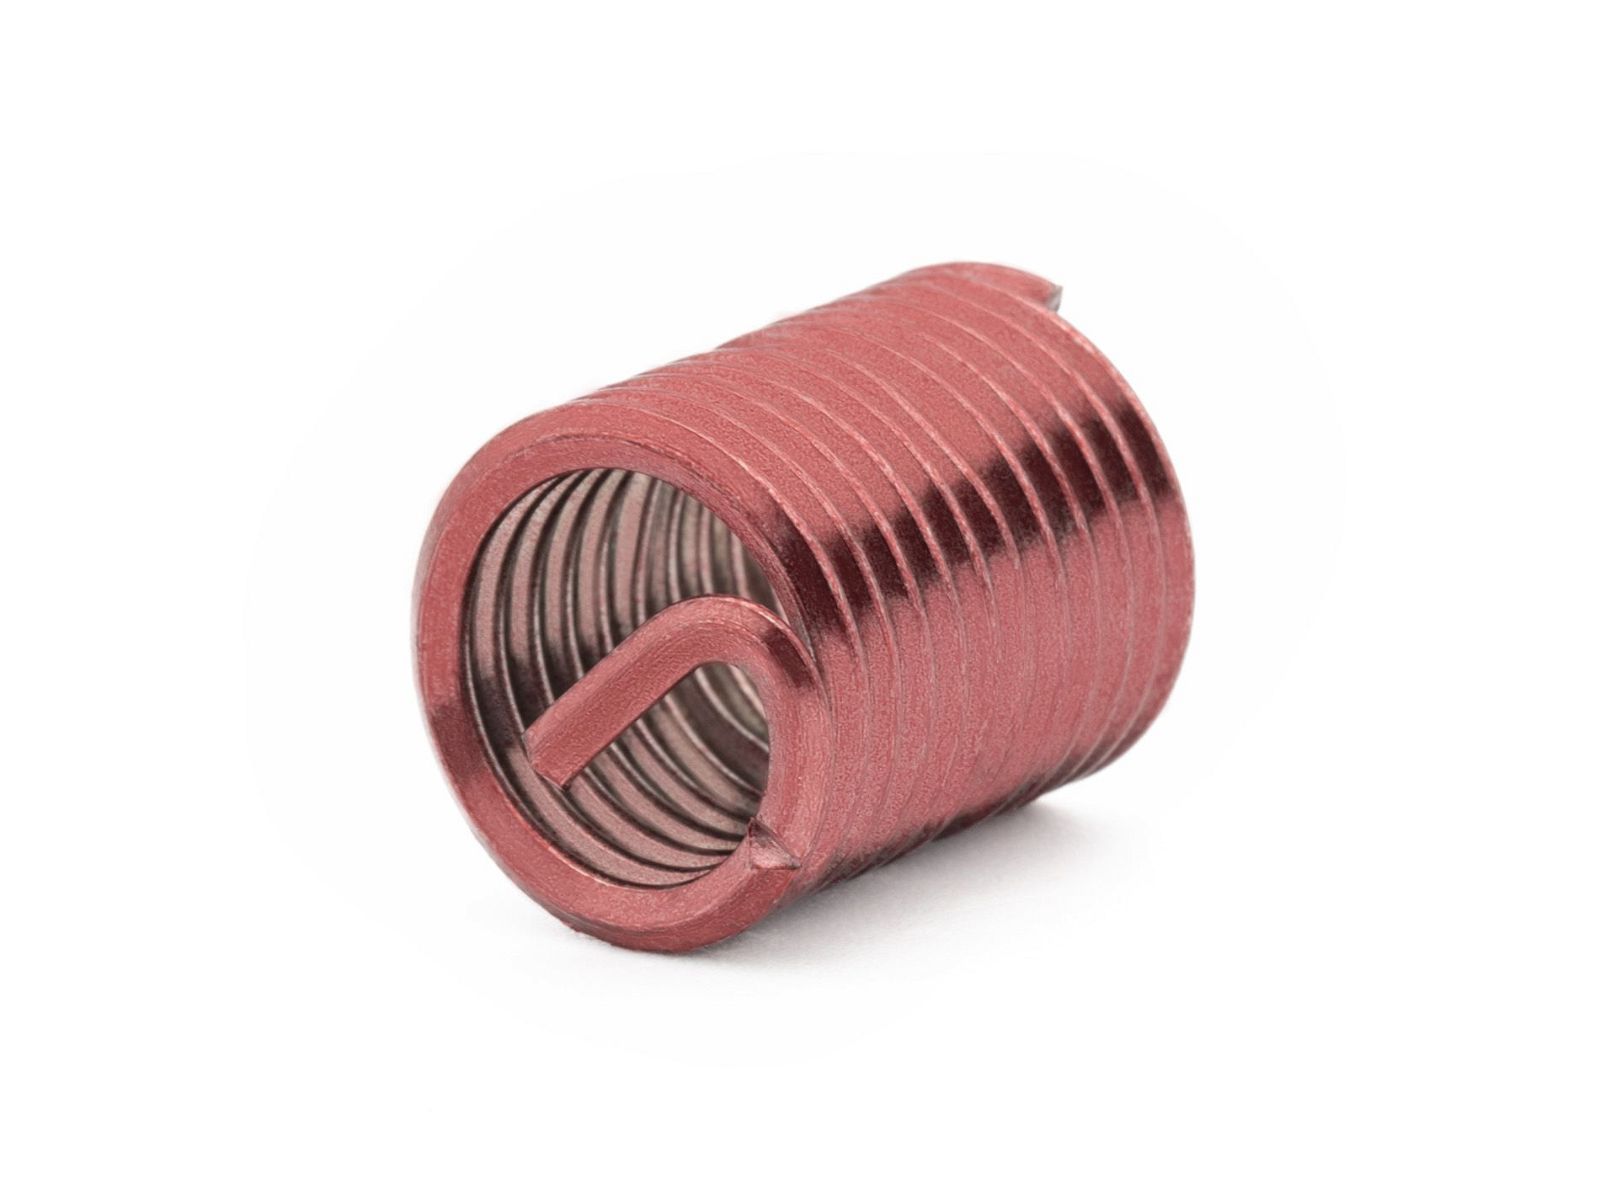 BaerCoil Wire Thread Inserts M 5 x 0.8 - 2.0 D (10 mm) - screw grip (screw locking) - 10 pcs.